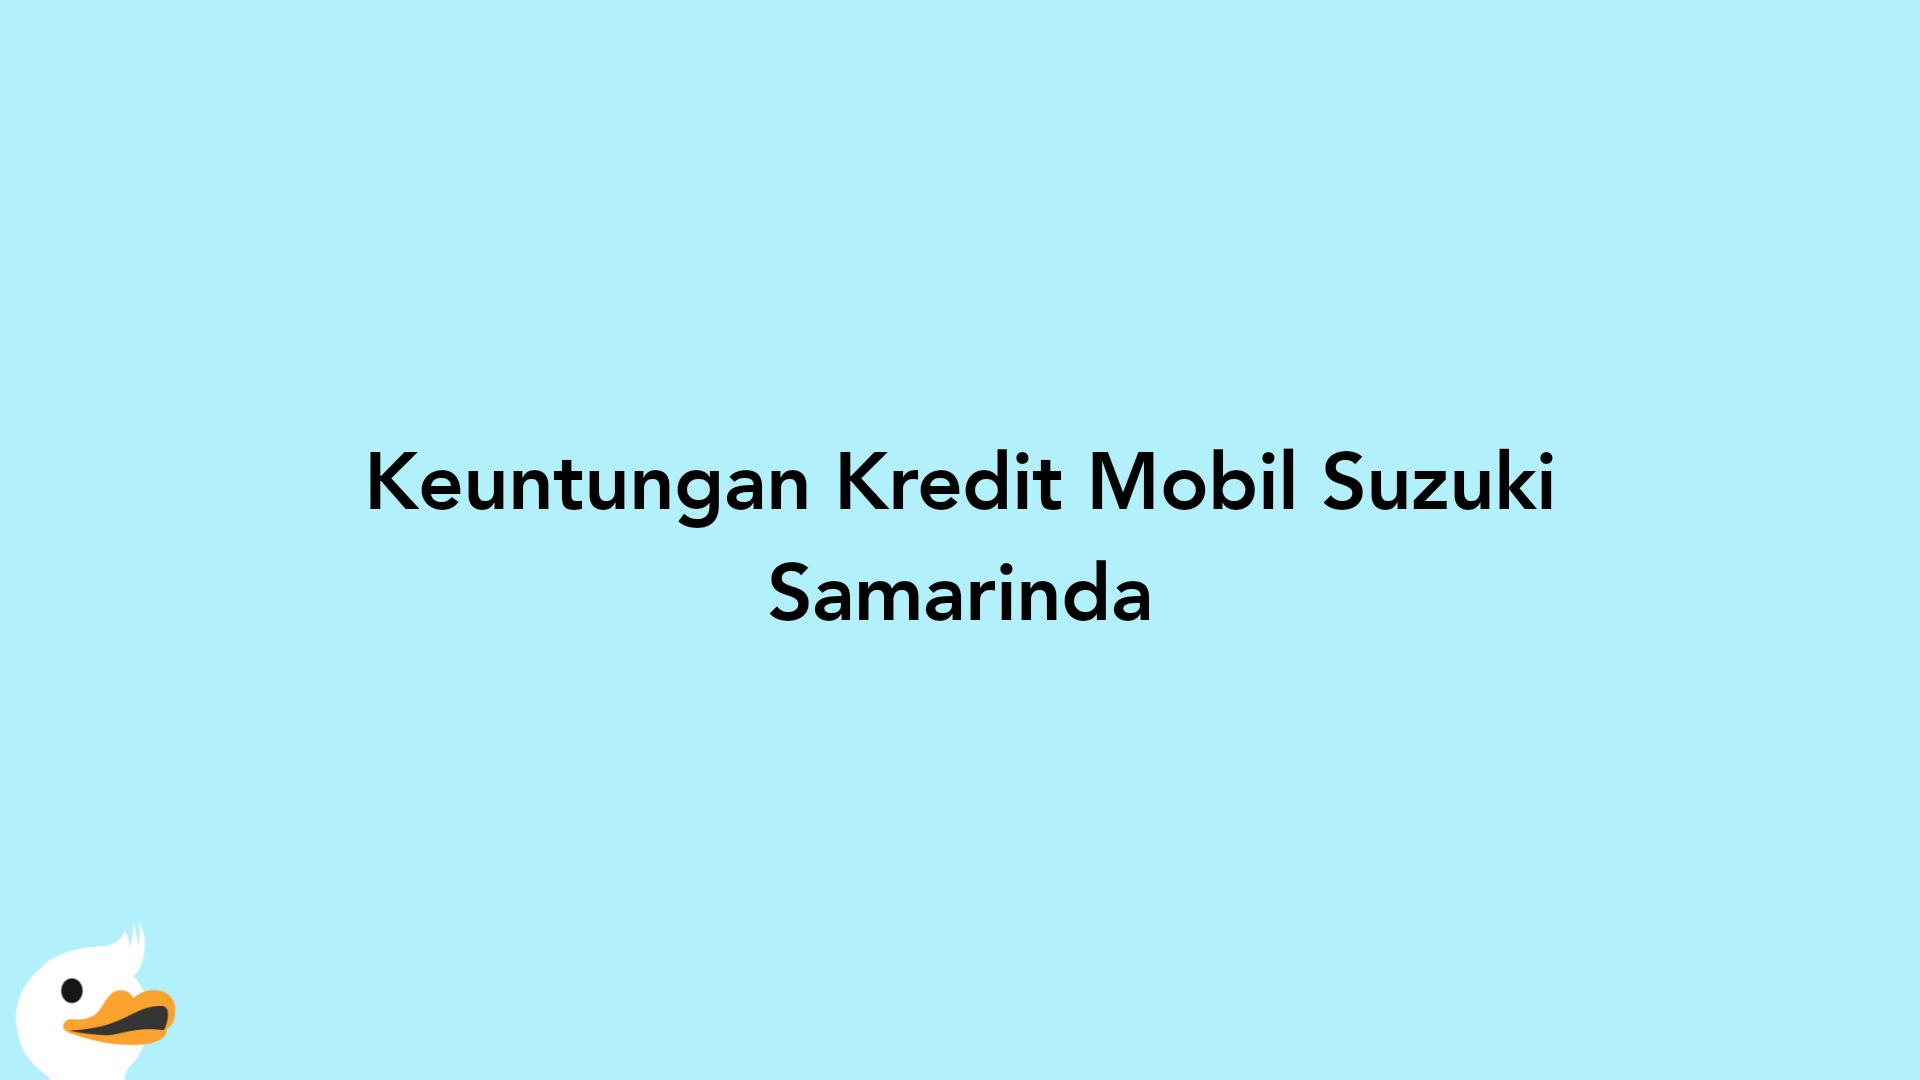 Keuntungan Kredit Mobil Suzuki Samarinda